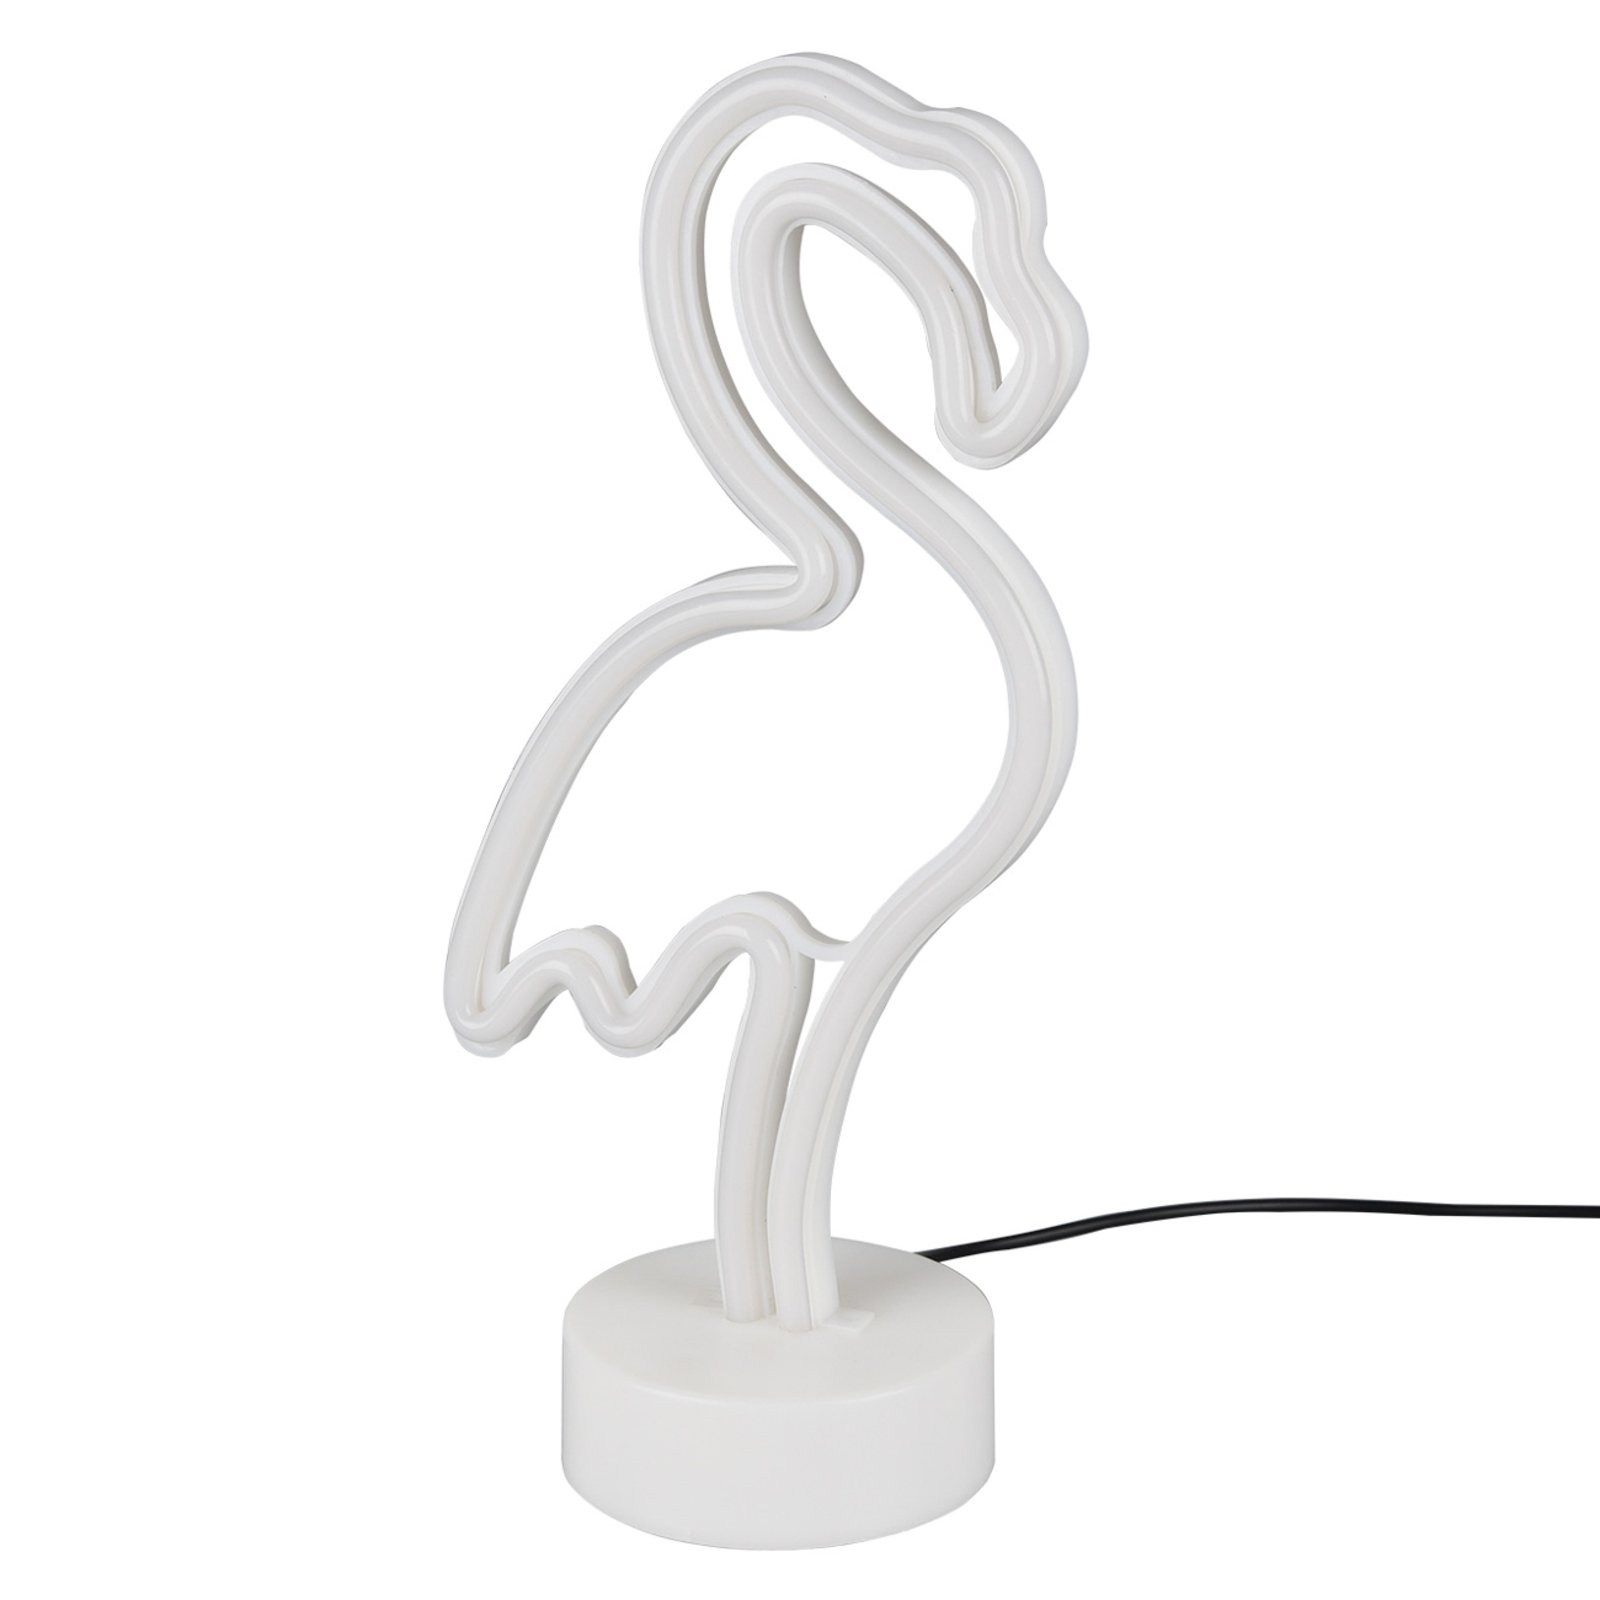 Lampă decorativă Flamingo